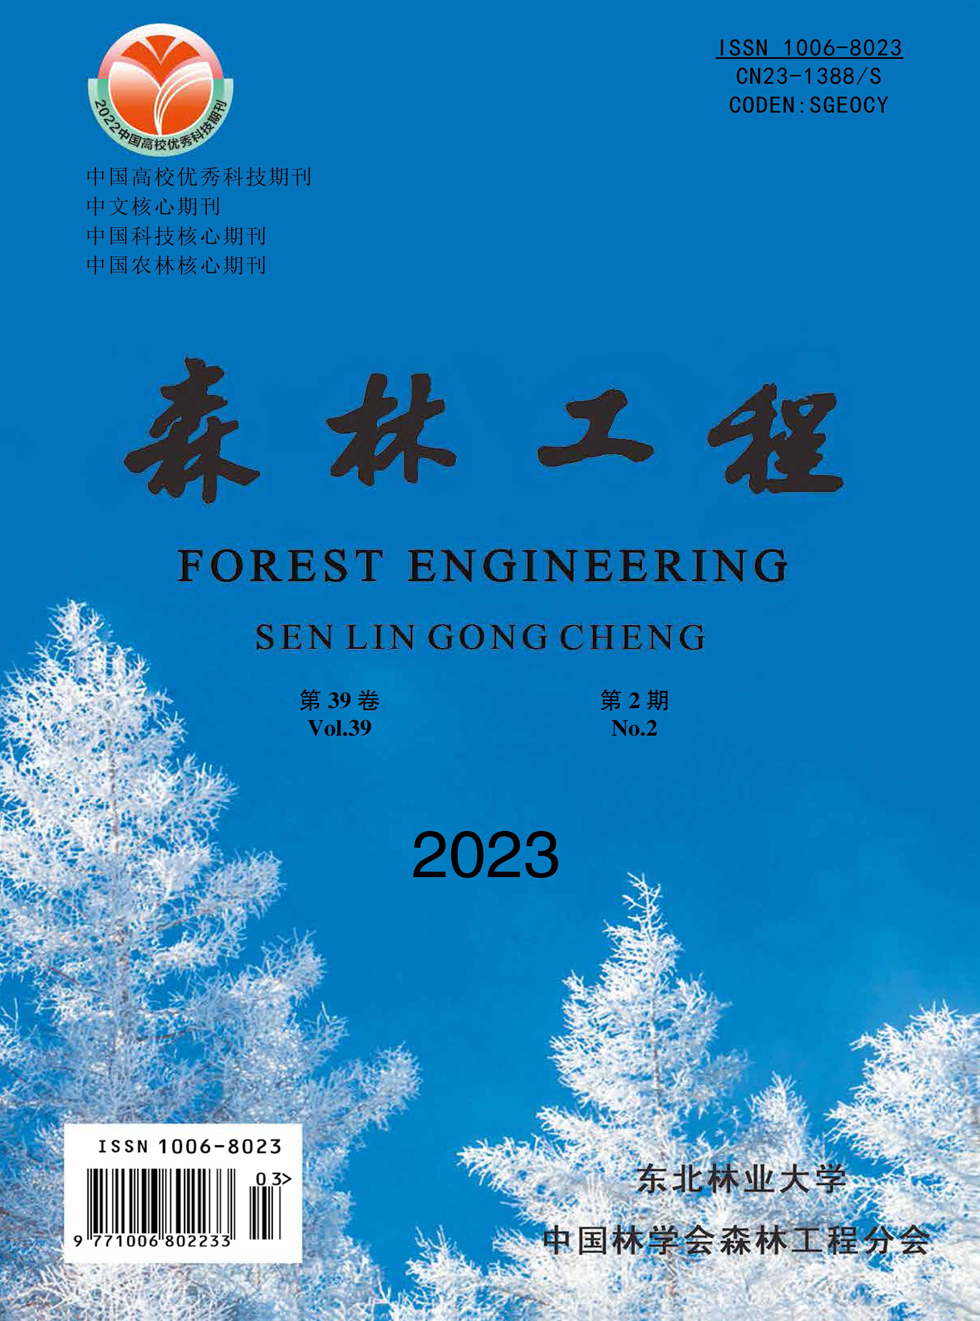 森林工程杂志封面